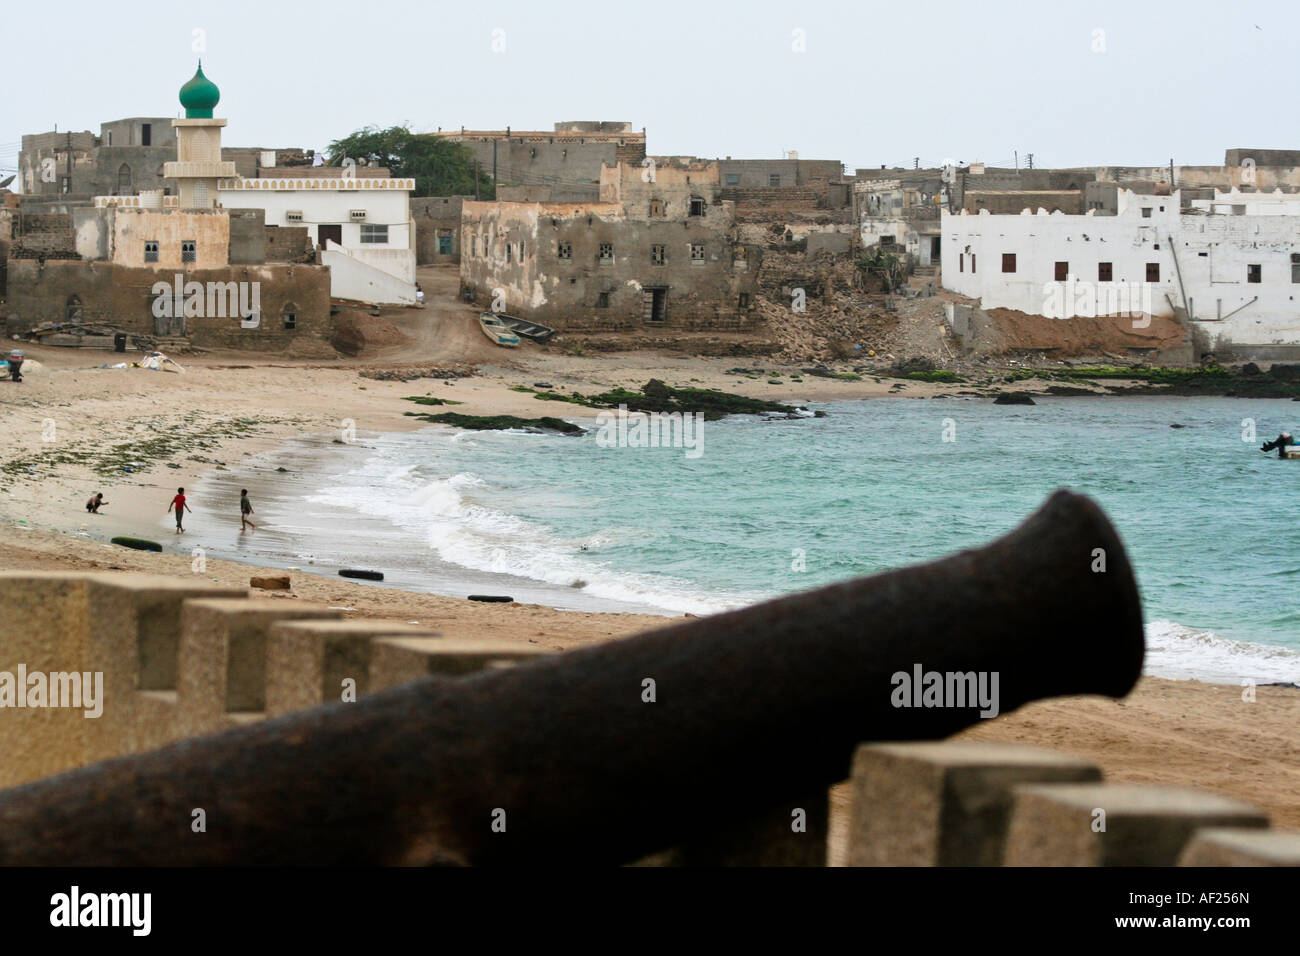 Cannon et village côtier au cours de la campagne Kharif ou Mousson d'Oman Le sud d'Oman Banque D'Images